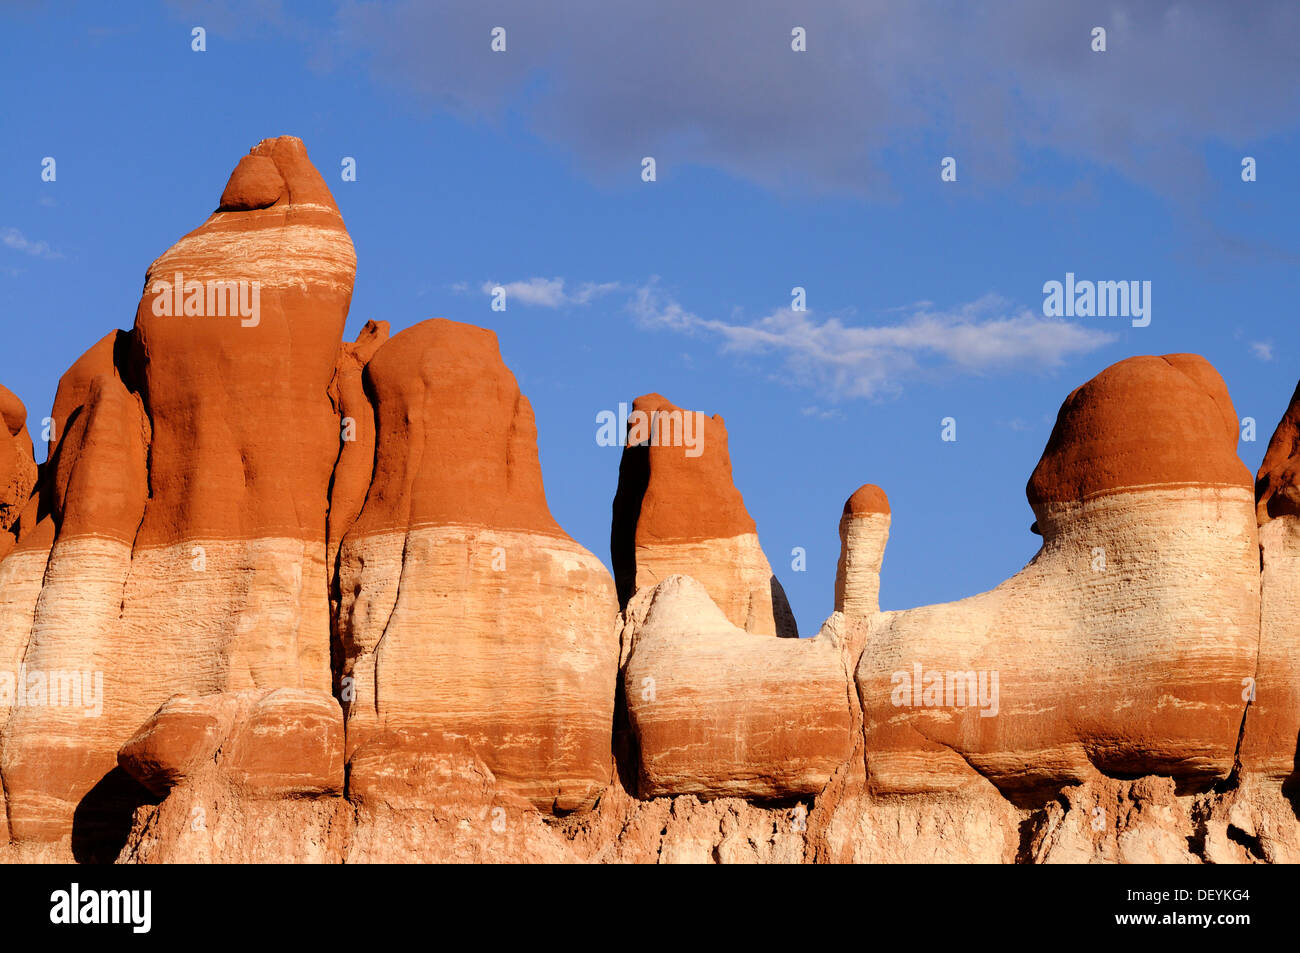 Bunte Hoodoos, Steinsäulen, Sandstein-Formationen, Blue Canyon, Arizona, Vereinigte Staaten von Amerika Stockfoto